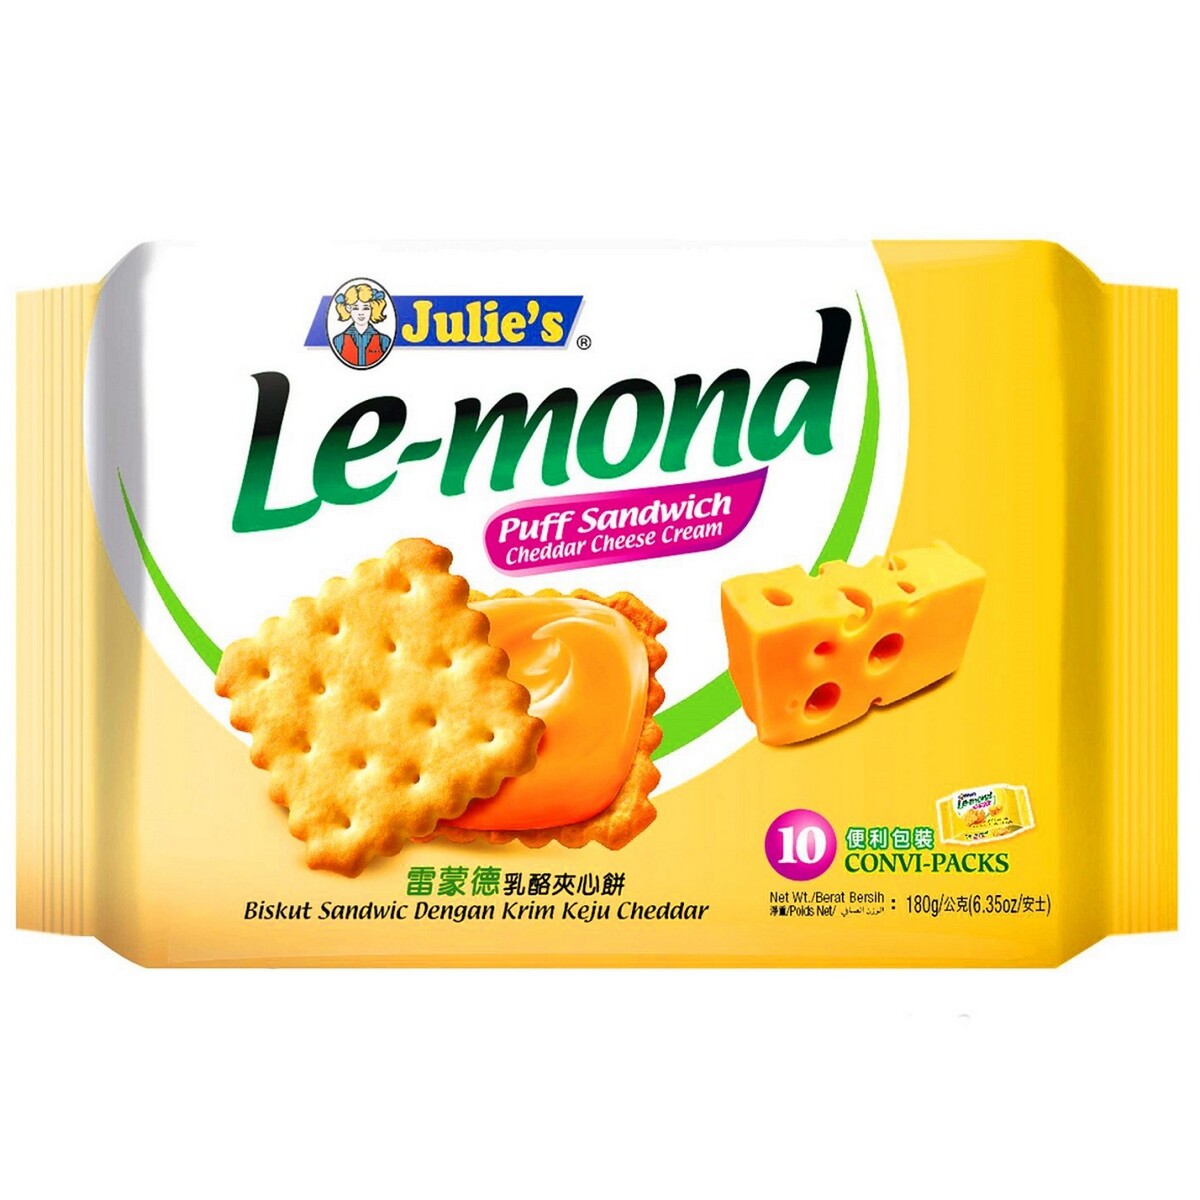 Julie's Le-Mond Puff Sandwich Cheddar 180gm